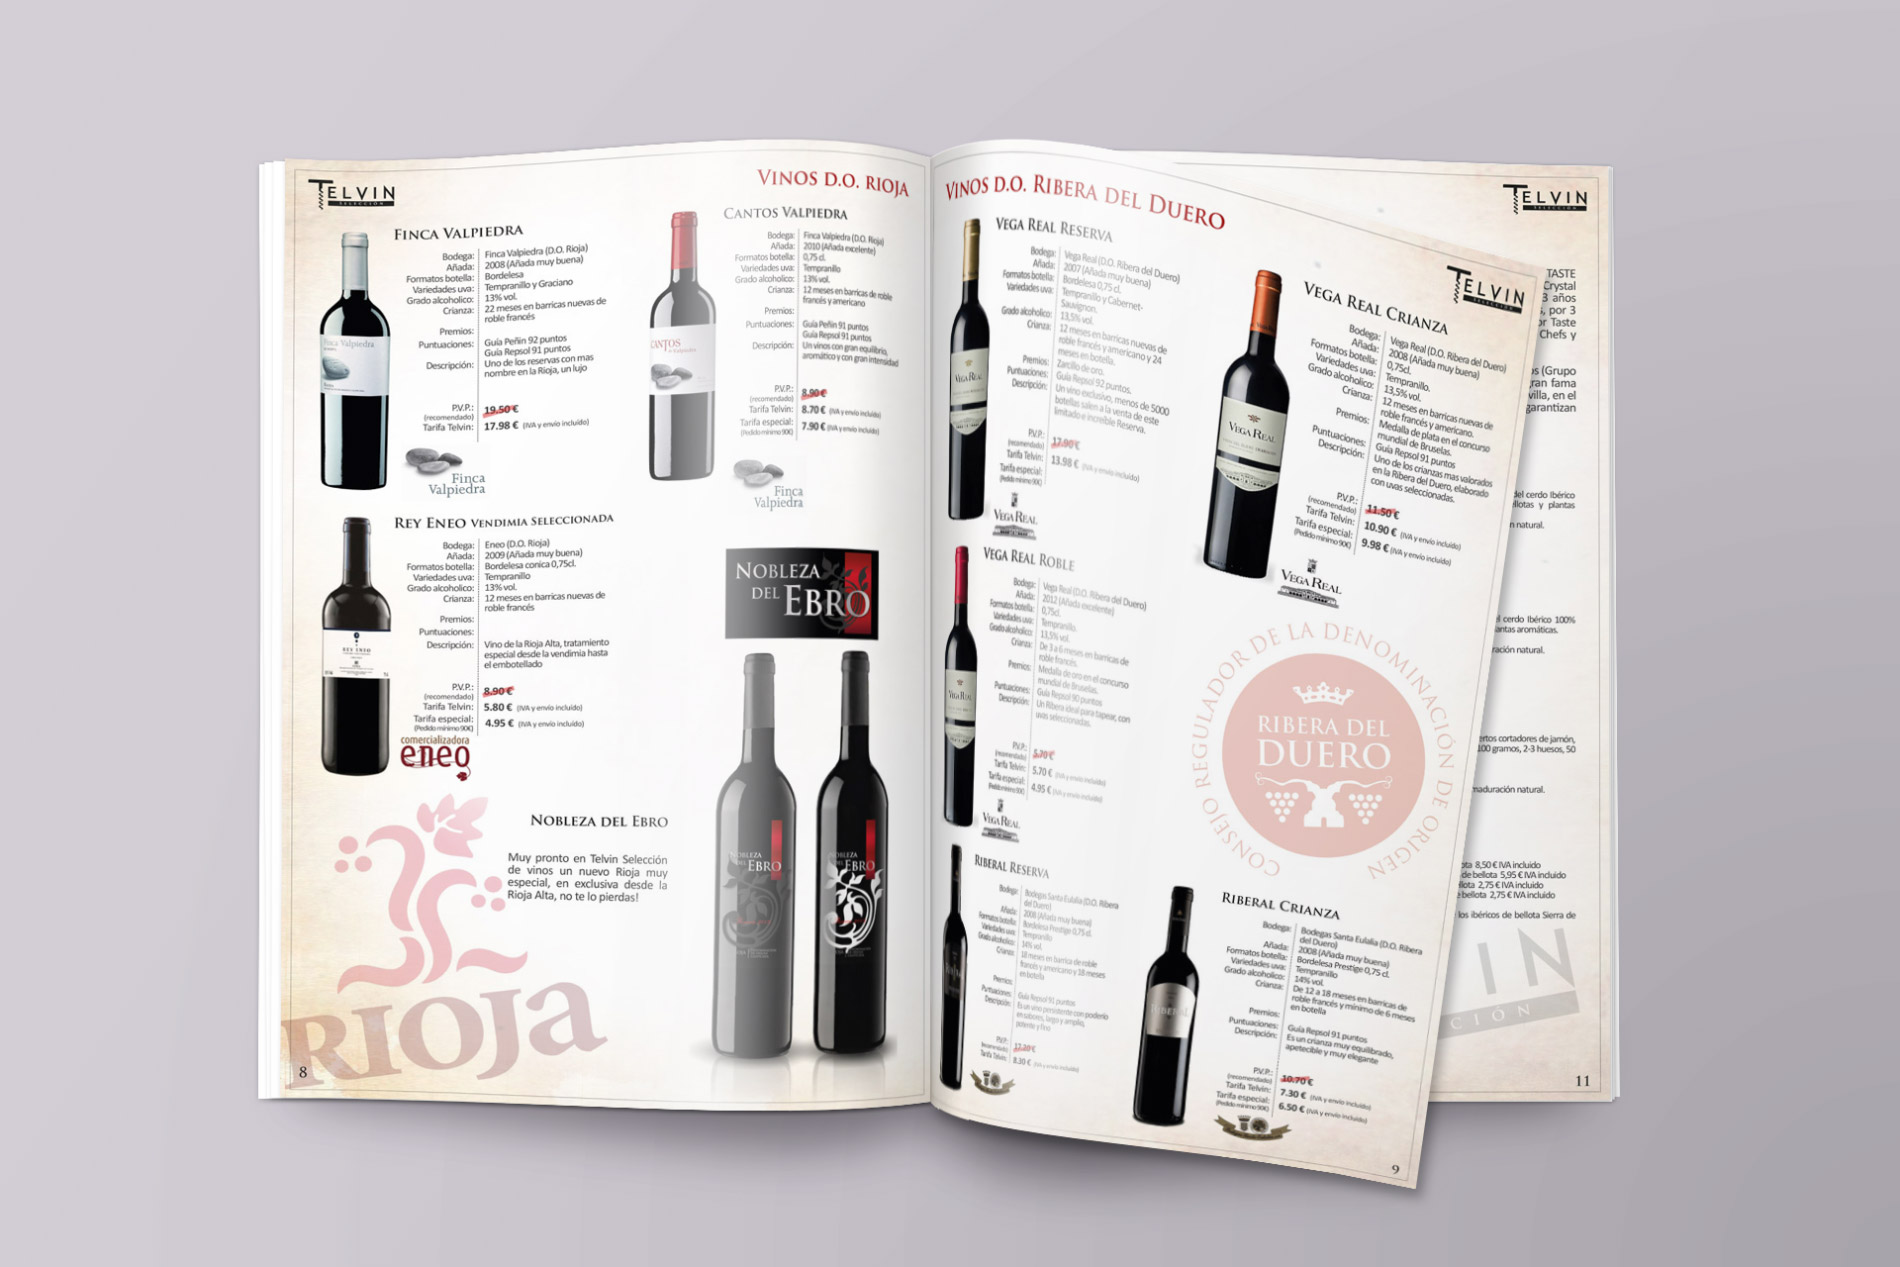 Diseño gráfico y creativo de maquetación de catálogos de productos para bodega exportadora de vinos, licores y cavas a nivel nacional